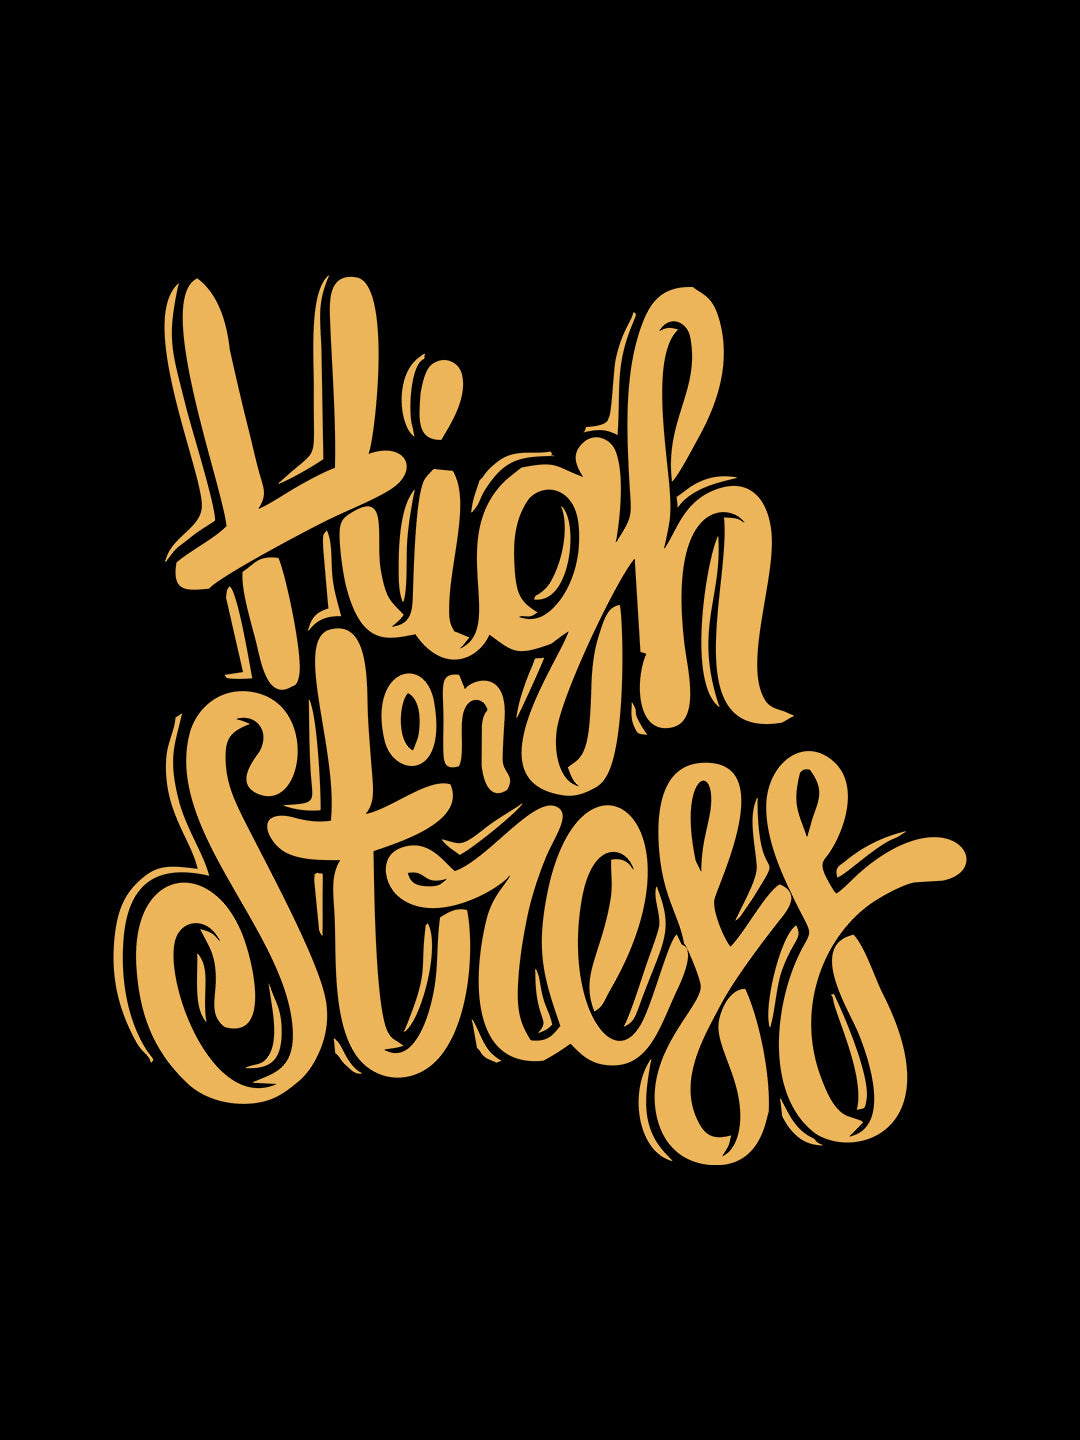 HIGH ON STRESS BLACK T-SHIRT